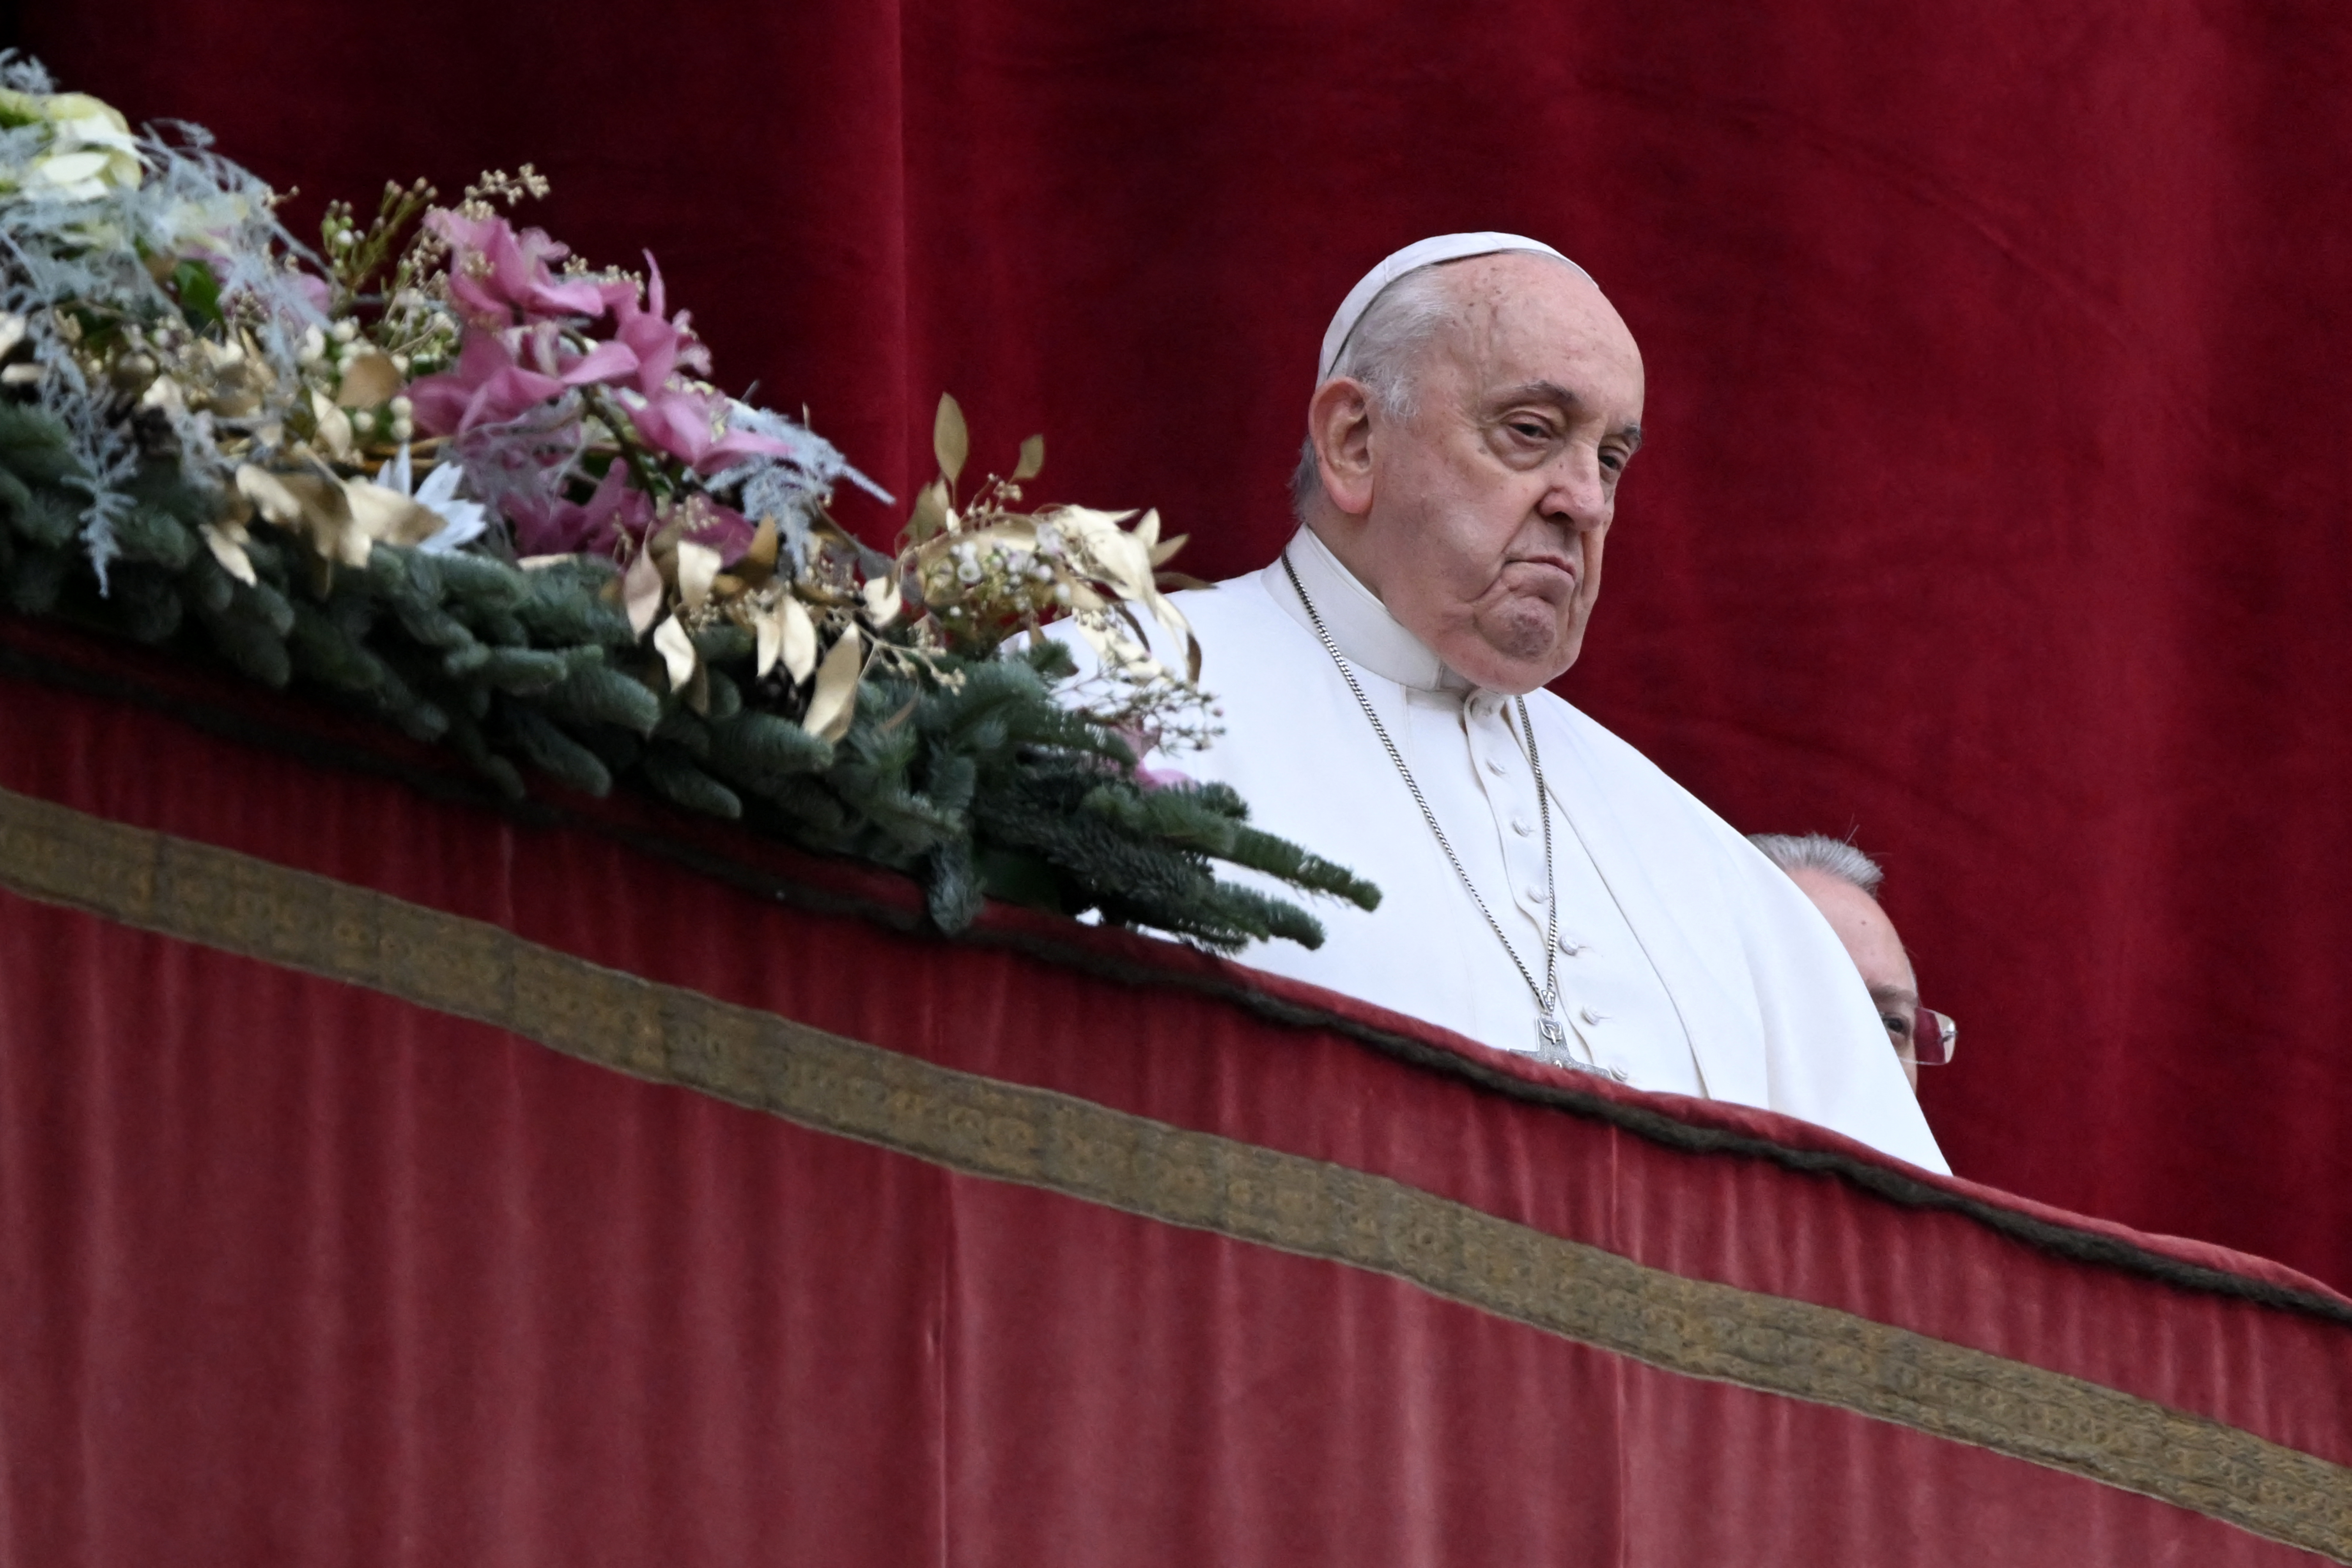 El papa Francisco: Mi dimisión, “una hipótesis lejana” aunque algunos piensen “en un nuevo cónclave”